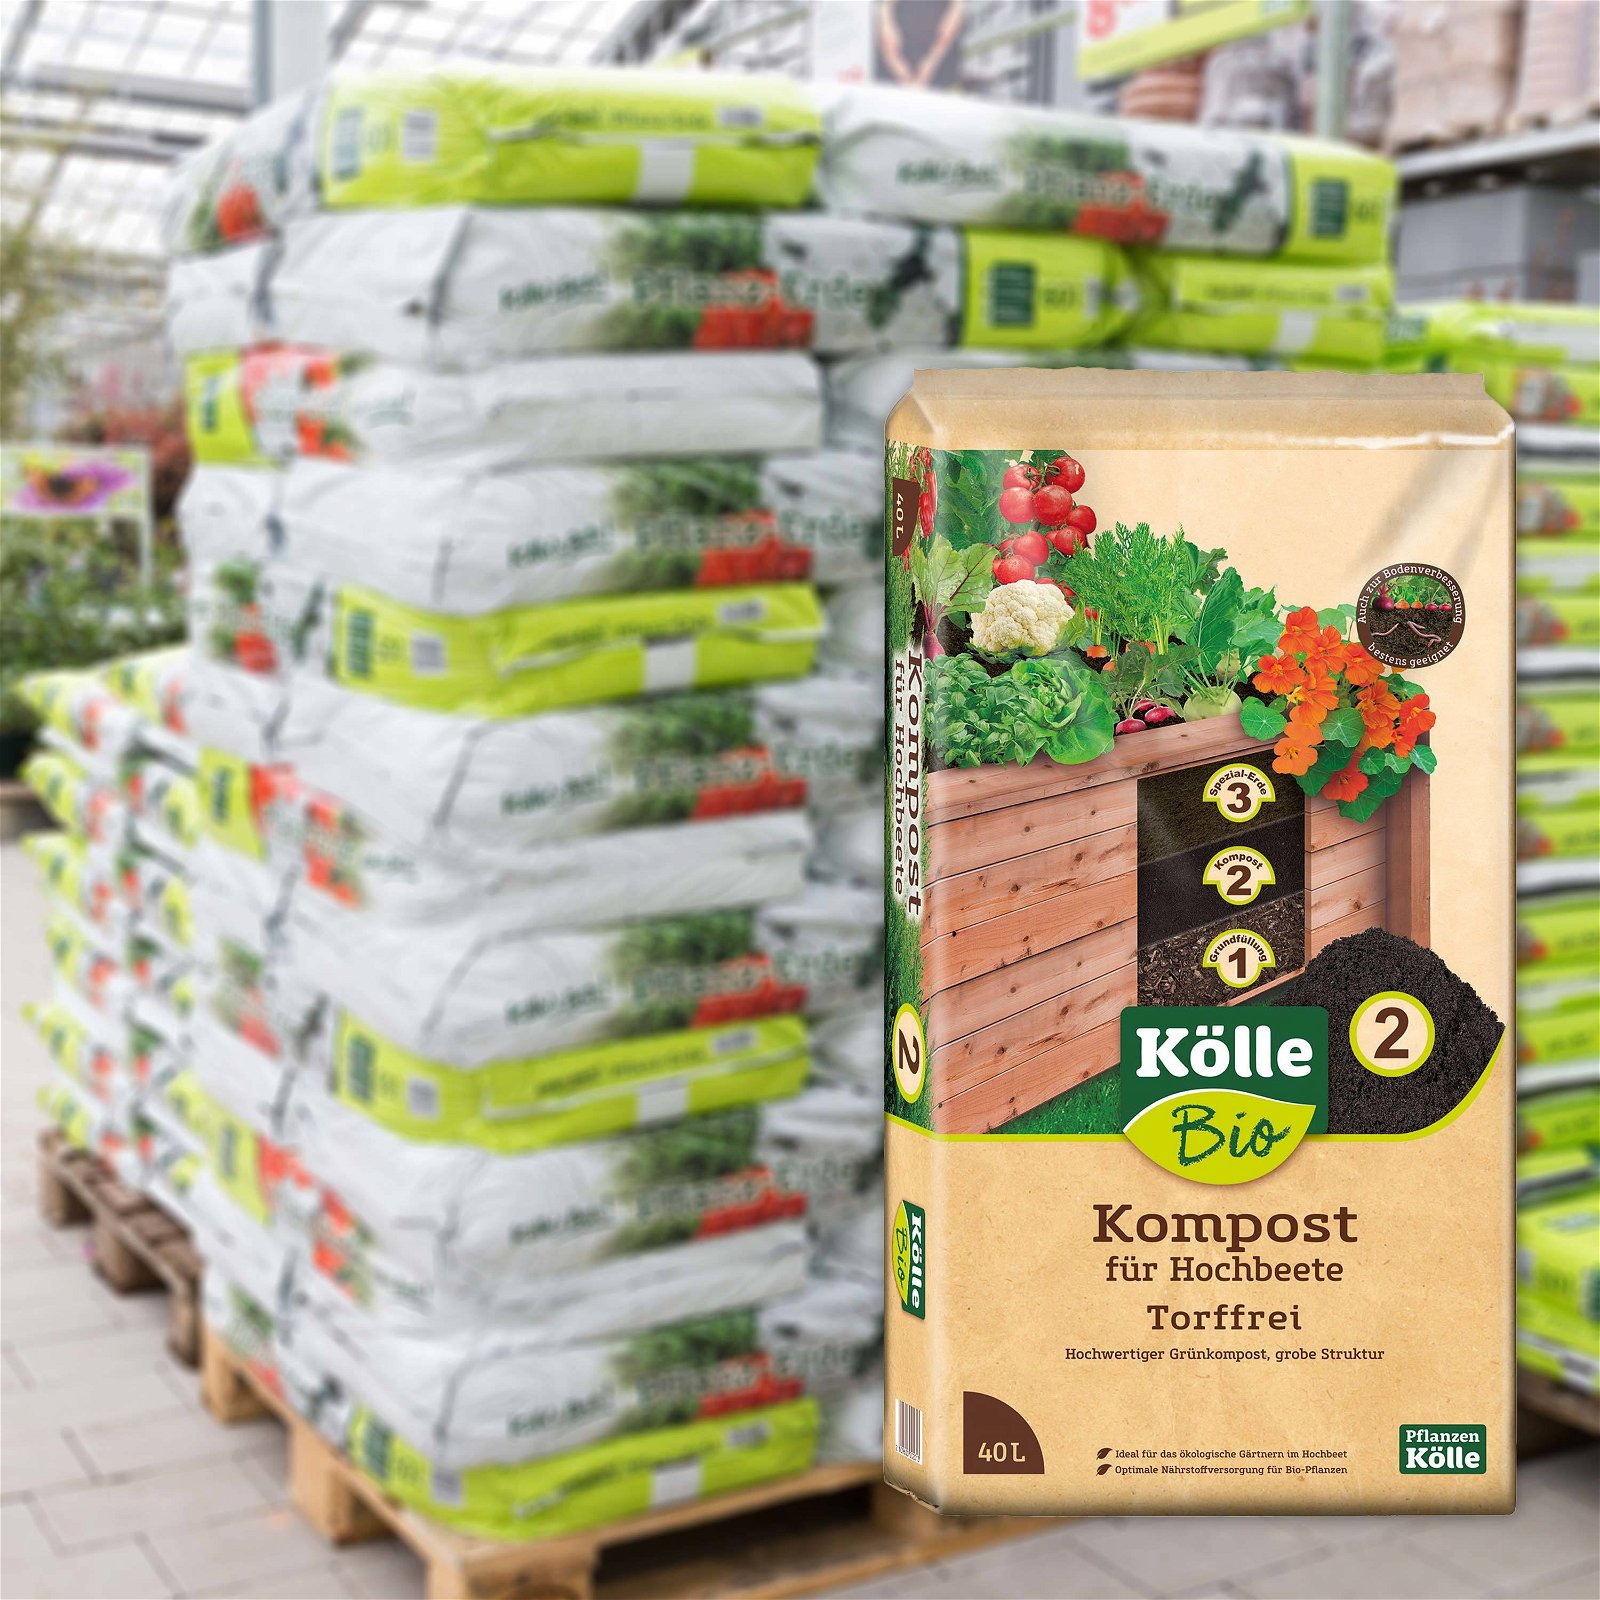 Kölle Bio Hochbeet-Kompost 45 Sack à 40 l, Palettenware ohne zusätzliche Versandkosten